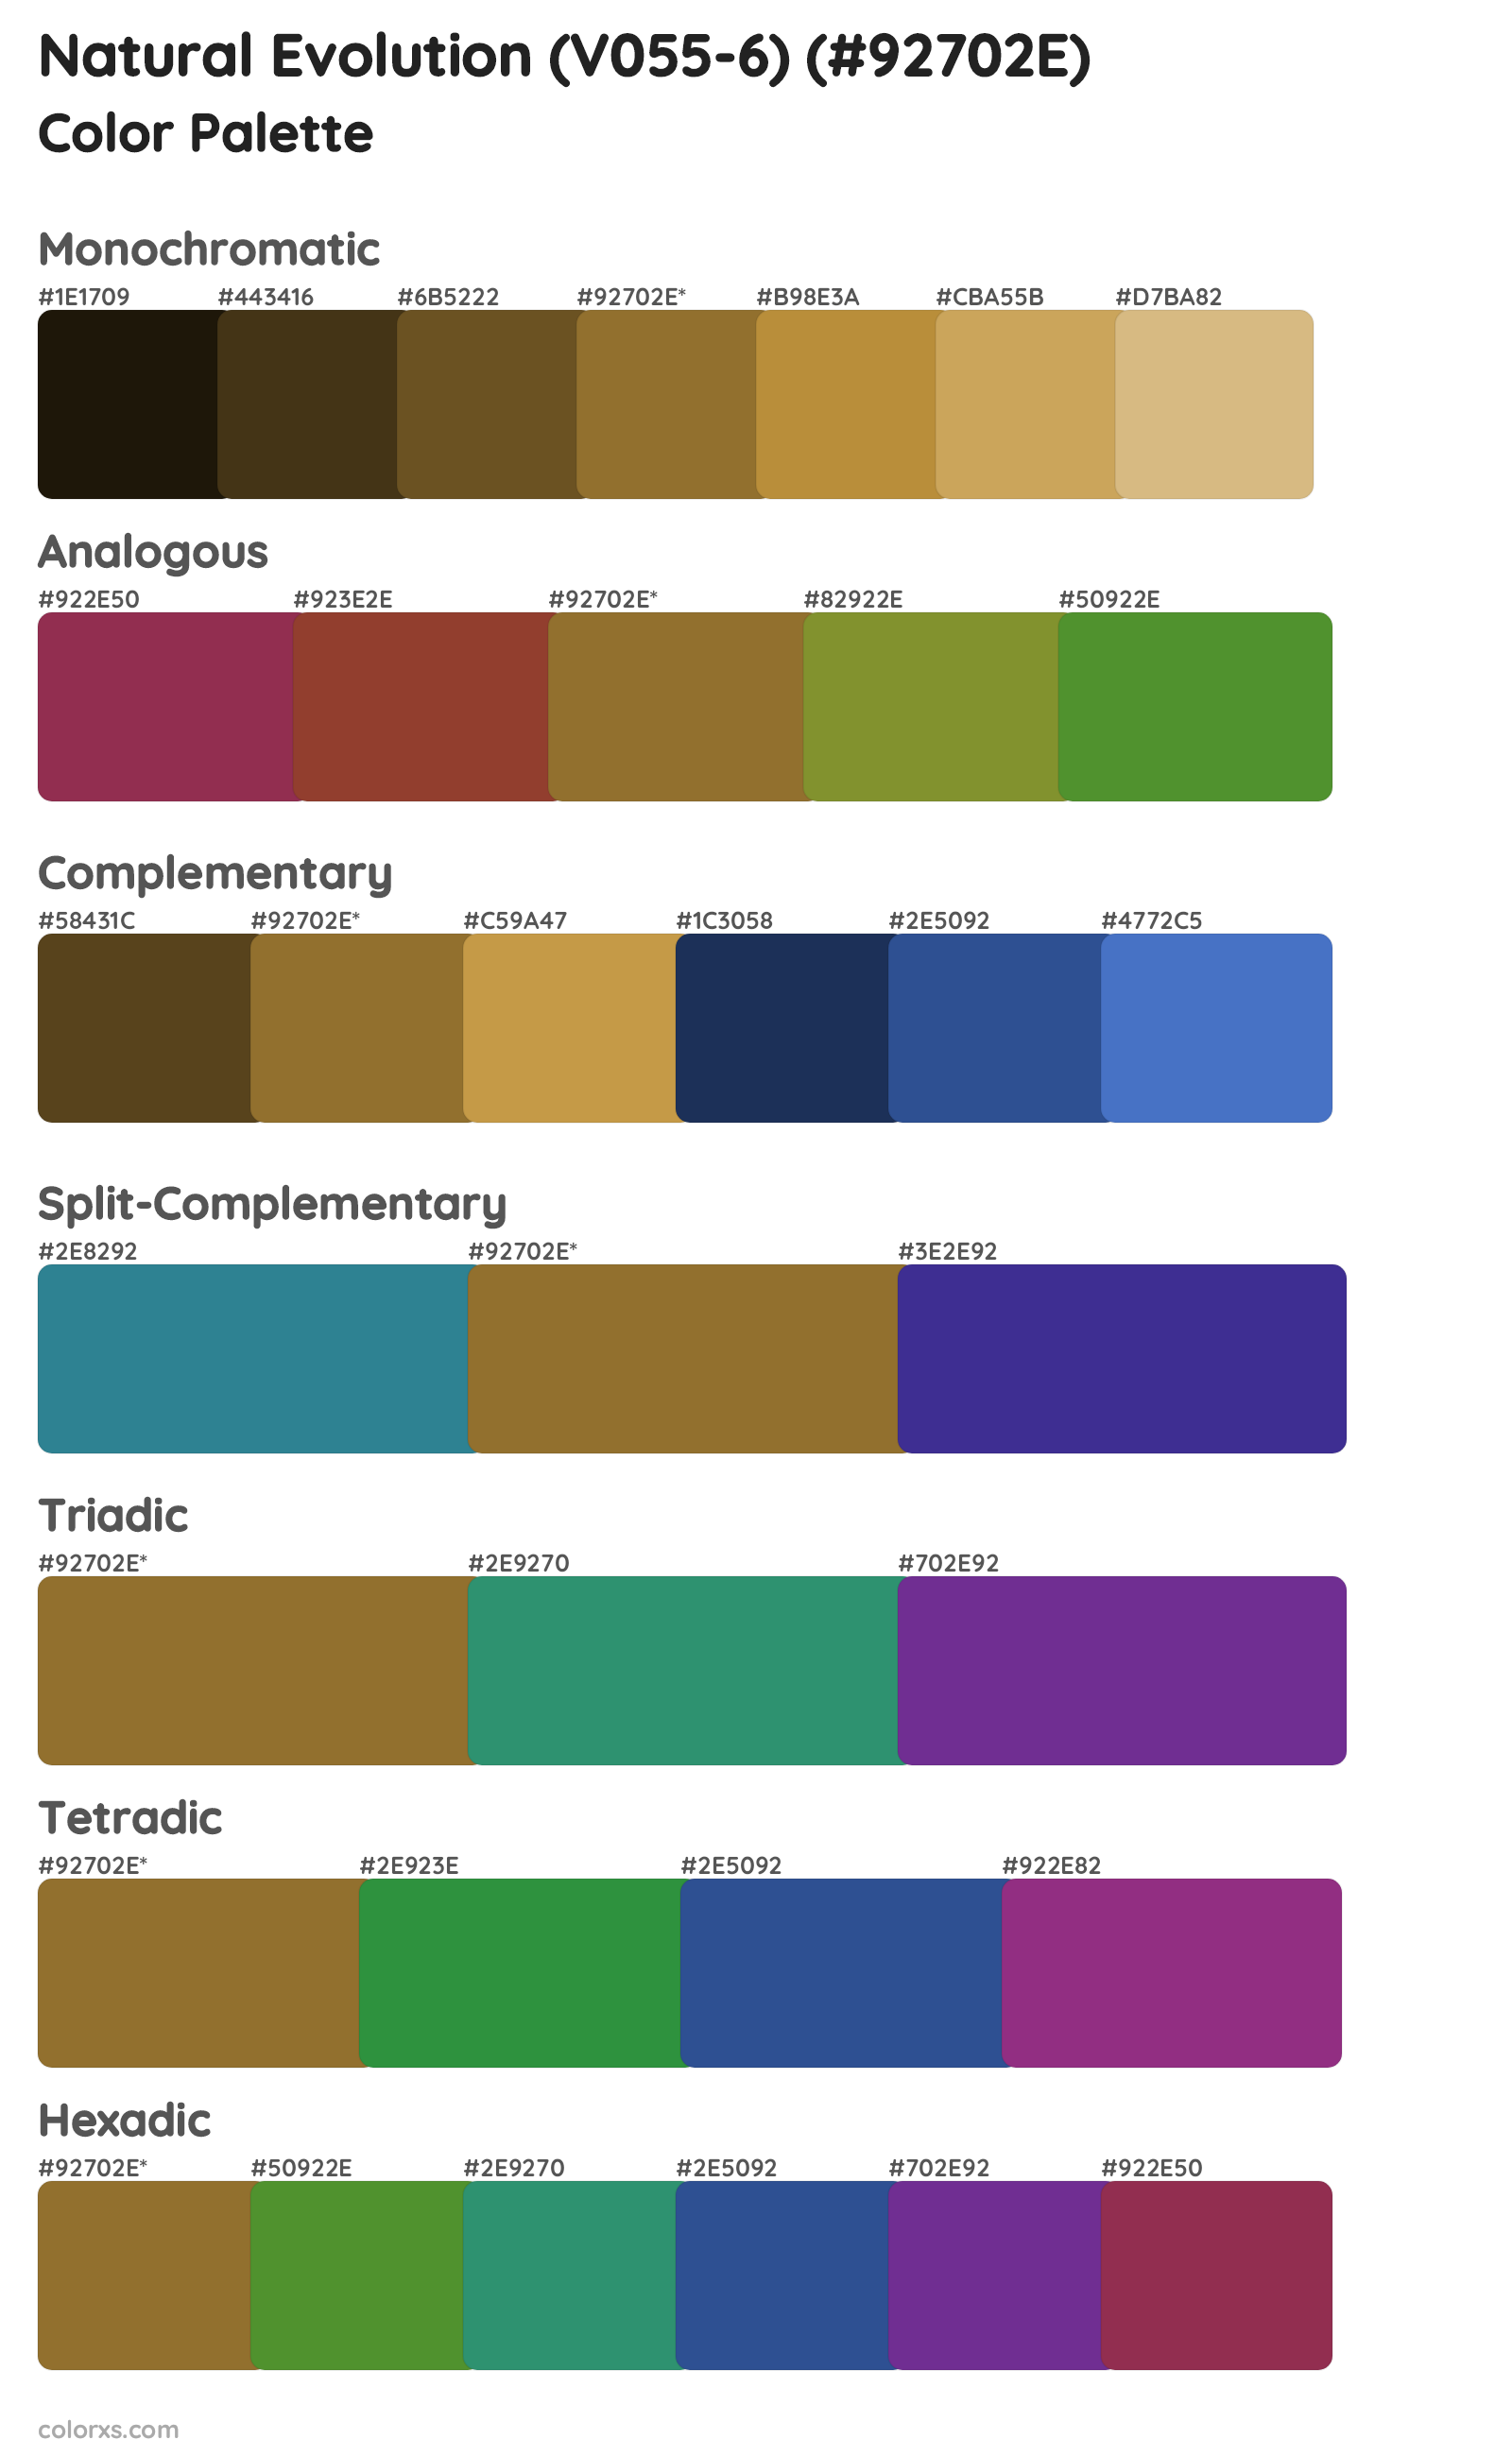 Natural Evolution (V055-6) Color Scheme Palettes